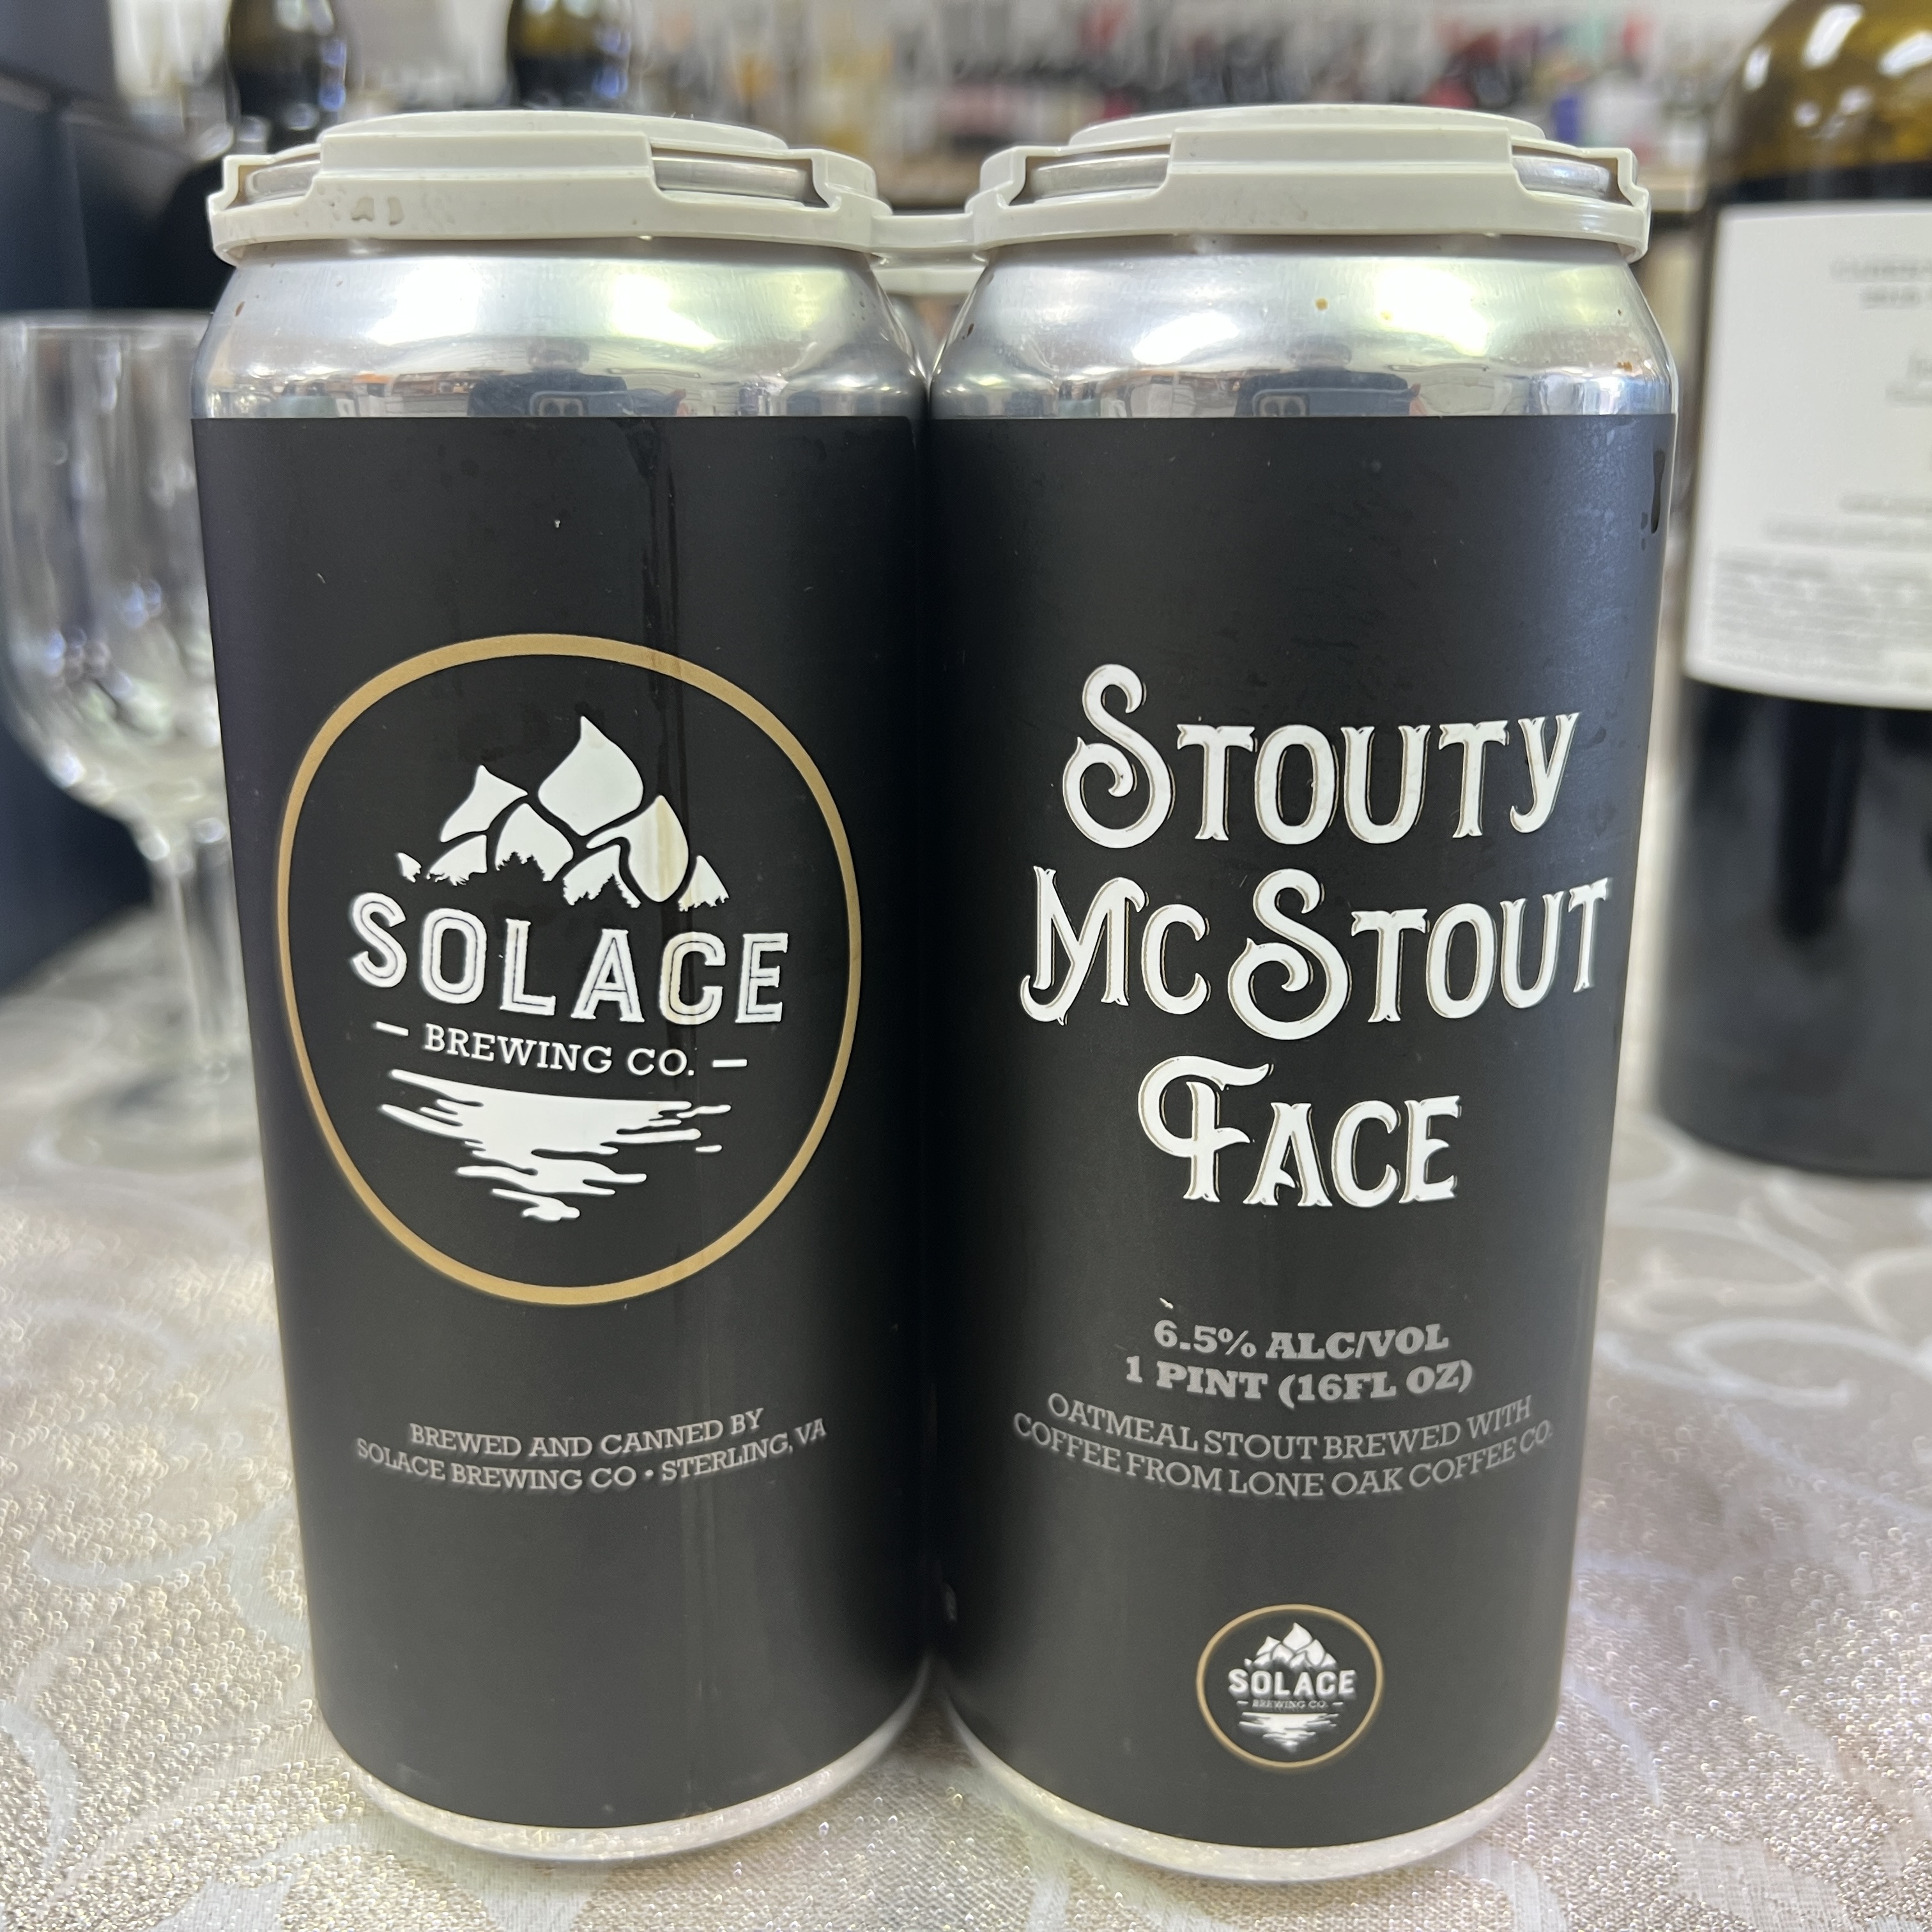 Solace Brewing Stouty McStout Face 4 x 16 oz cans